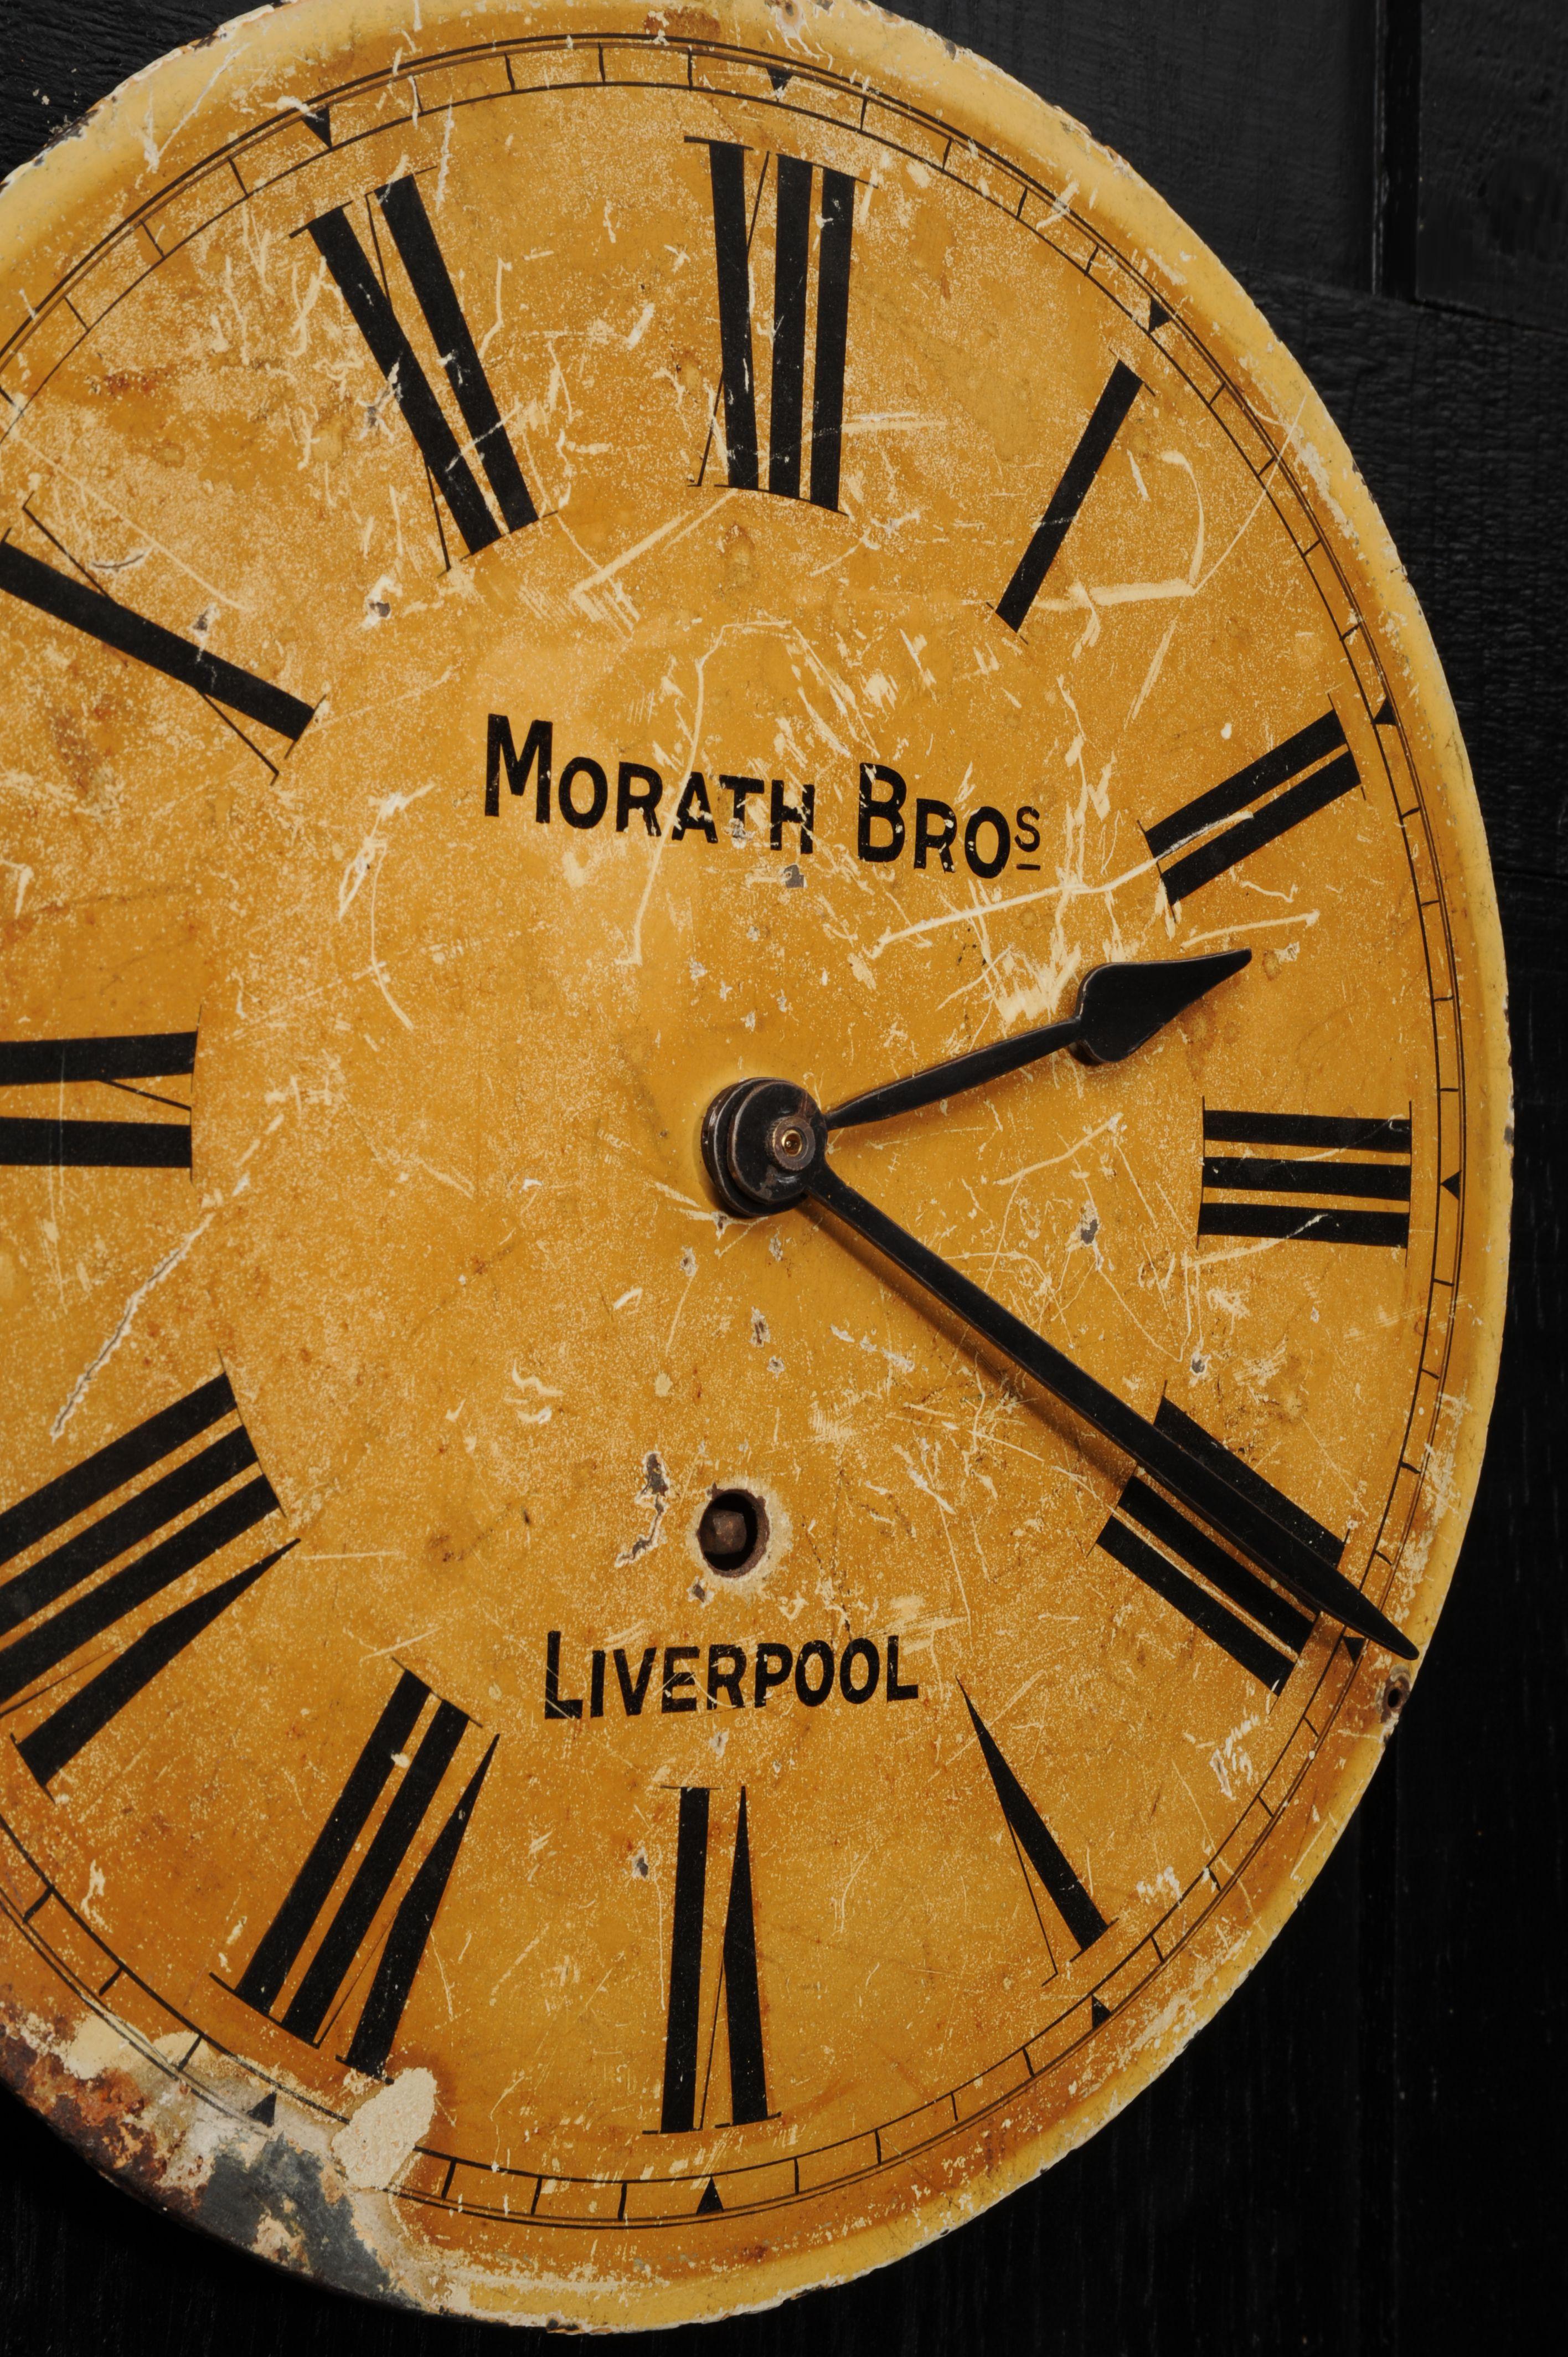 Ein schönes bemaltes Metallzifferblatt, signiert Morath Brothers, Liverpool. Es befindet sich in einem Industriegebäude und weist die Spuren eines harten Lebens auf. Ursprünglich ein mechanisches Uhrwerk des famosen Herstellers Gebrüder Morath, das